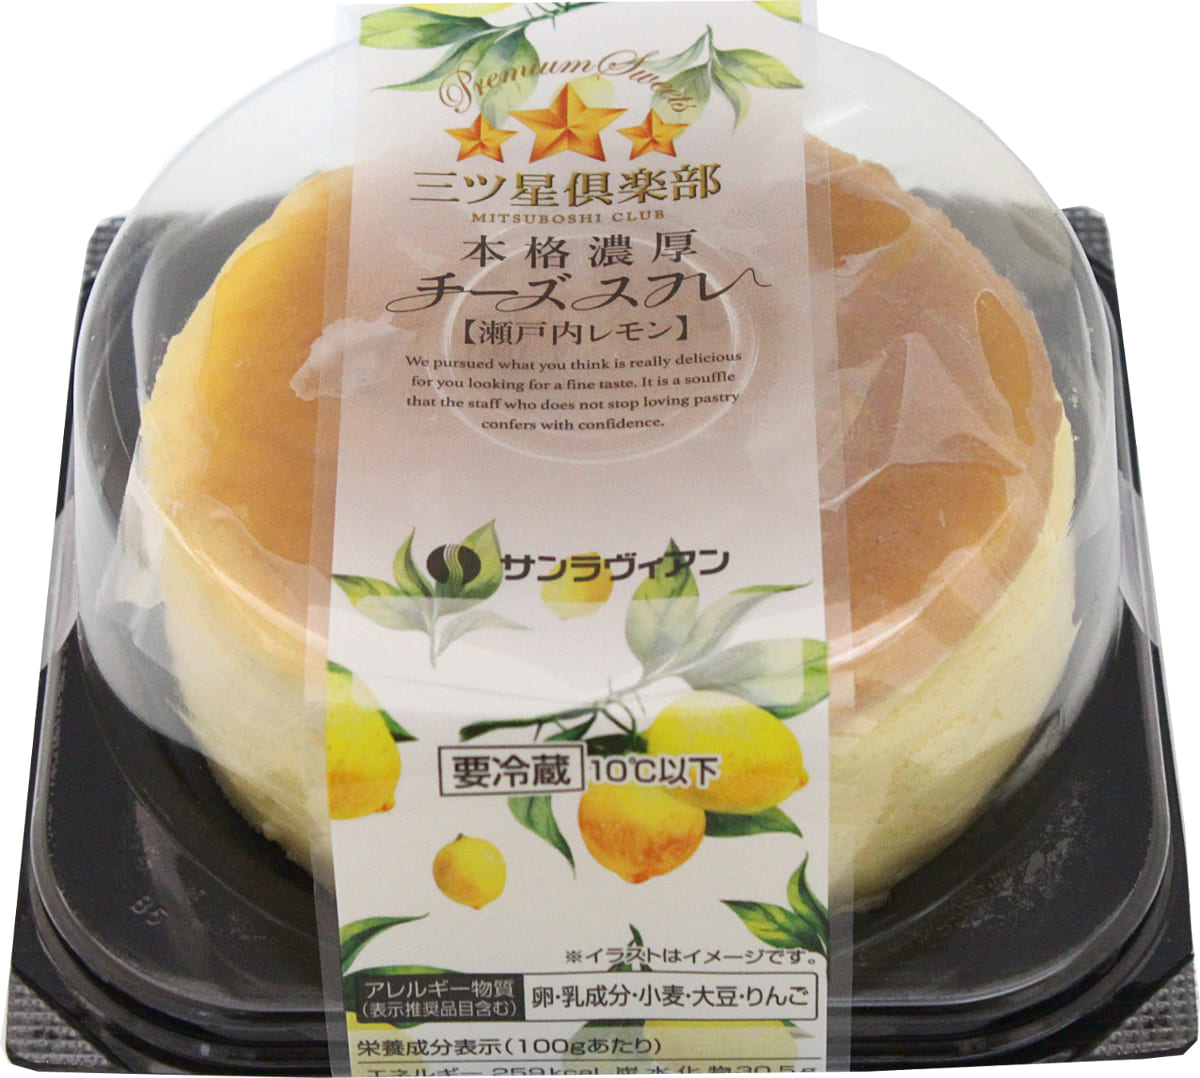 「本格濃厚チーズスフレ 瀬戸内レモン」税抜き540円